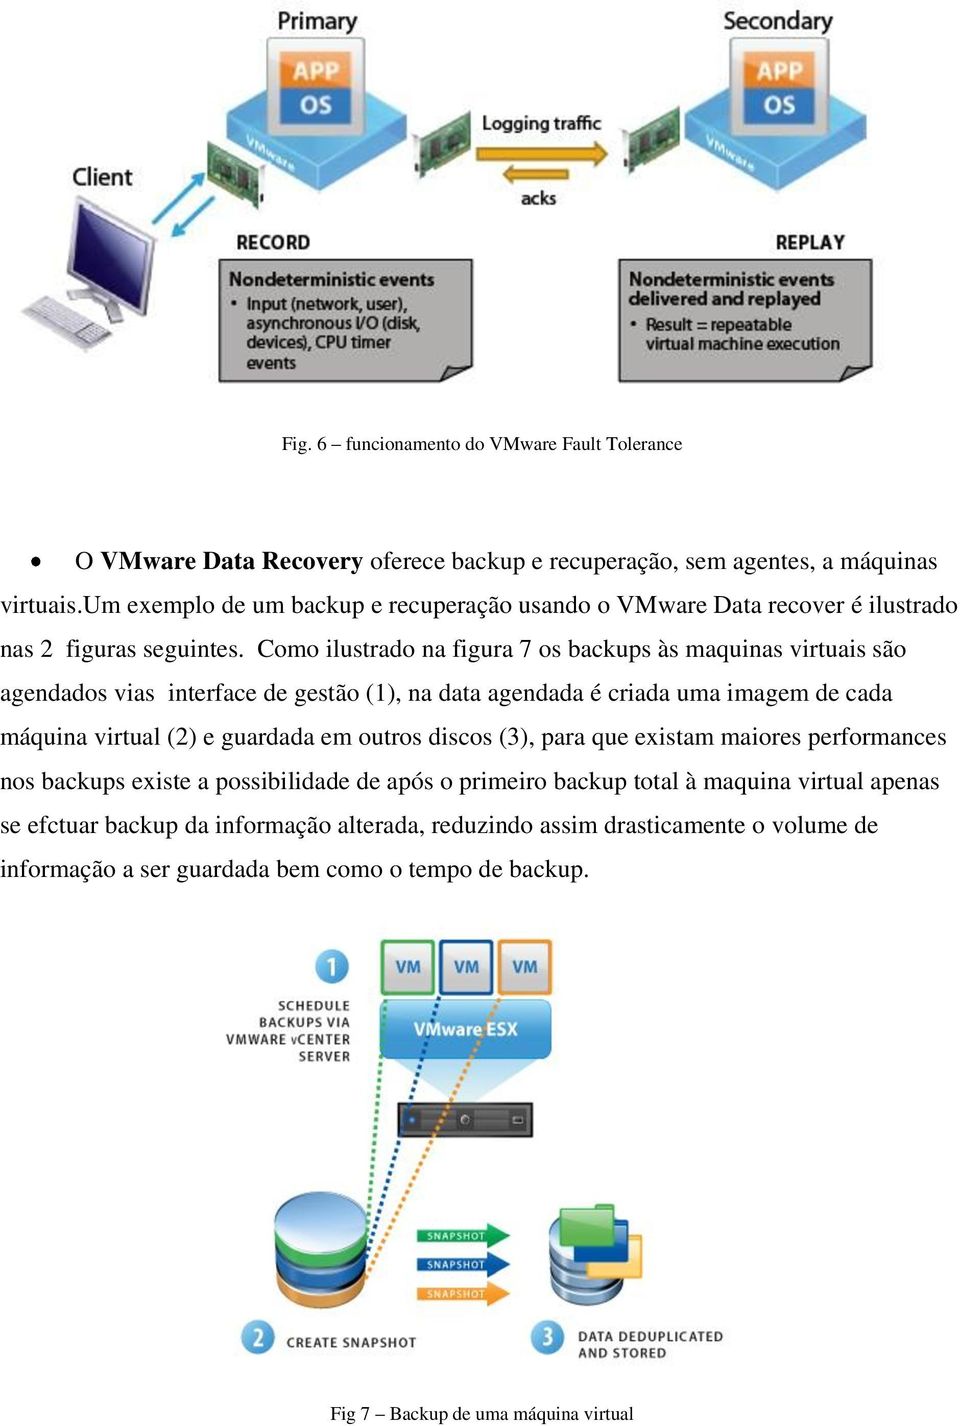 Como ilustrado na figura 7 os backups às maquinas virtuais são agendados vias interface de gestão (1), na data agendada é criada uma imagem de cada máquina virtual (2) e guardada em